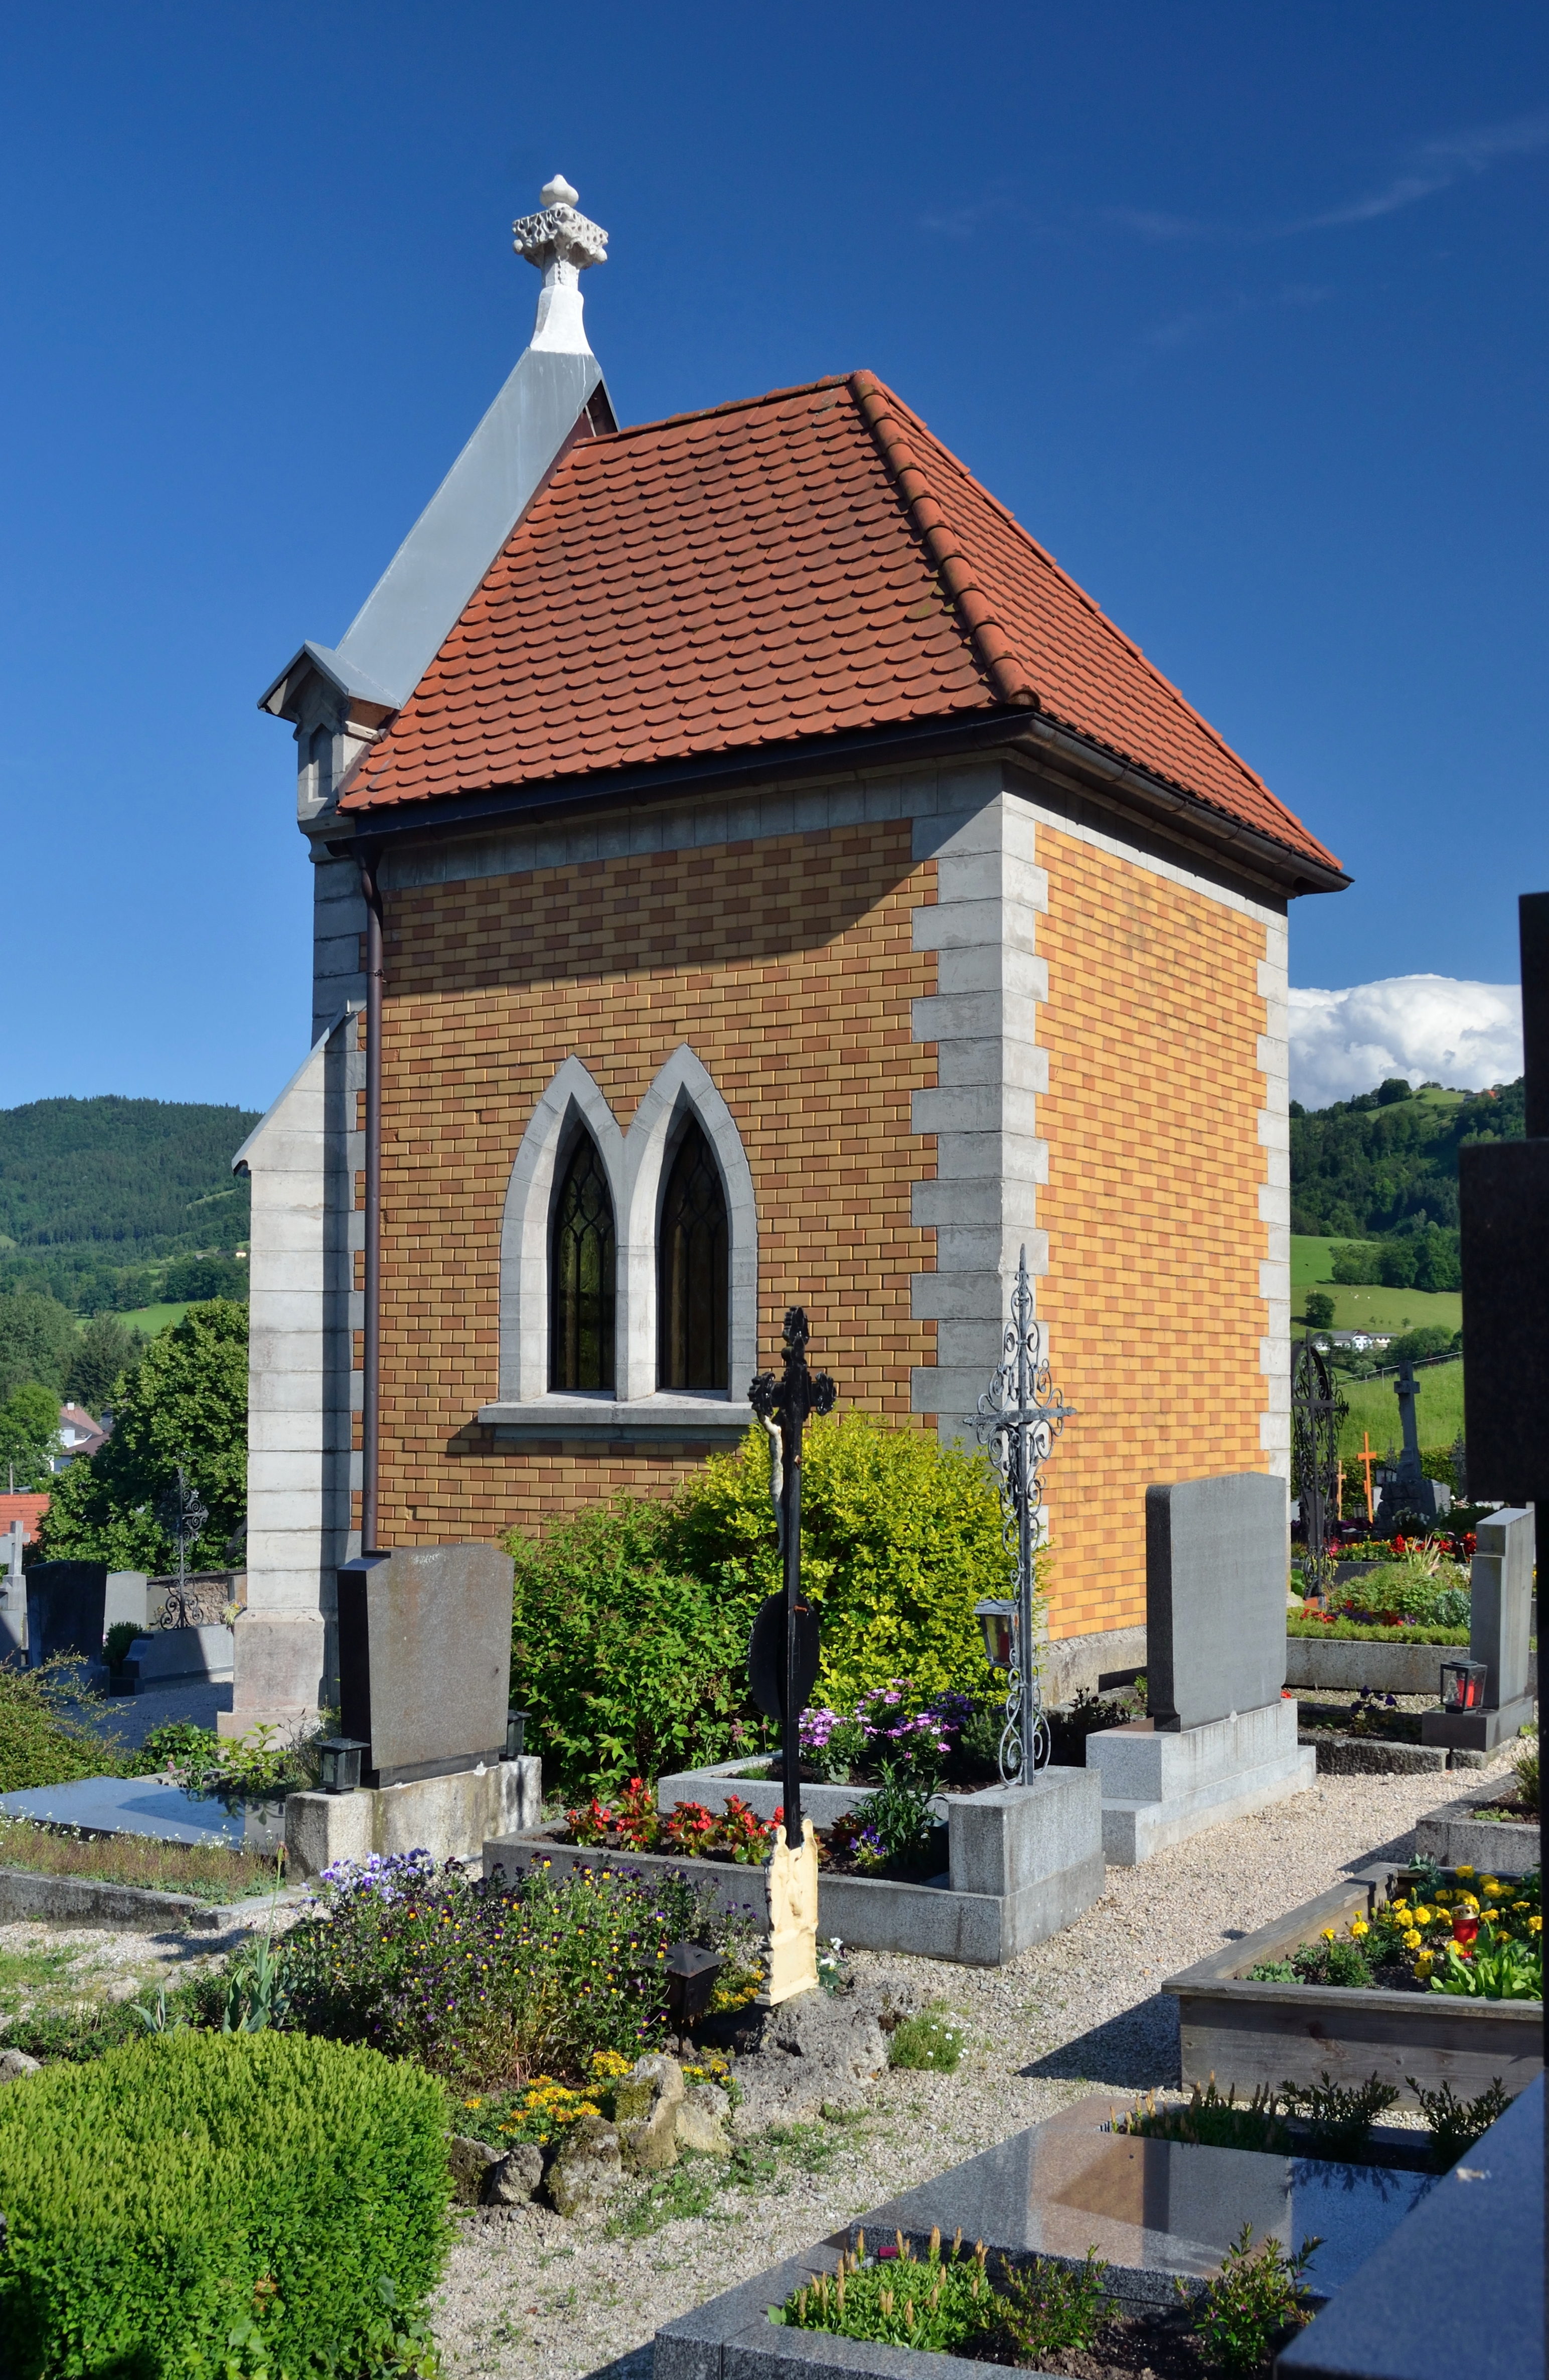 Friedhof Gresten 07 - burial vault